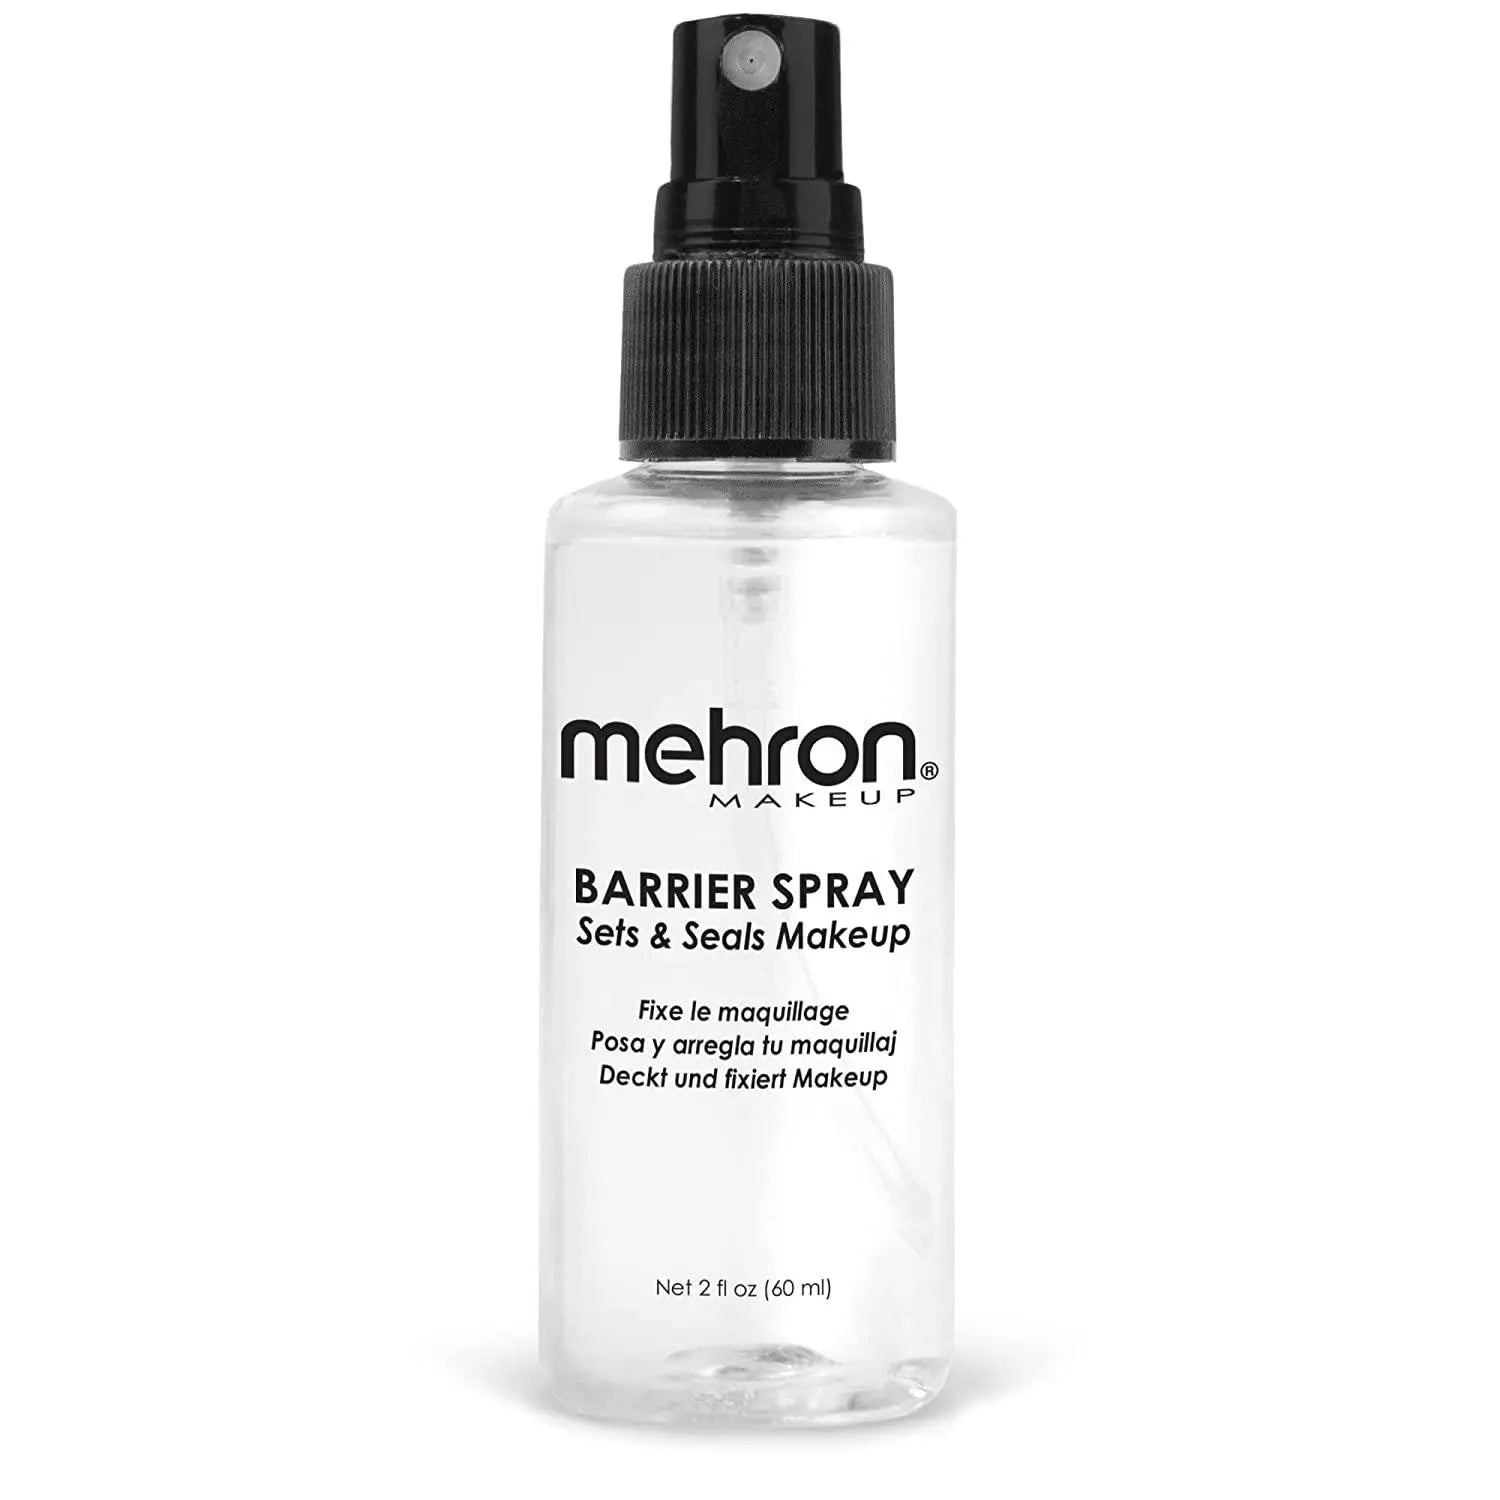 Mehron Barrier Spray Makeup Fixer and Sealer 60 ml - JOLIE'S UAE